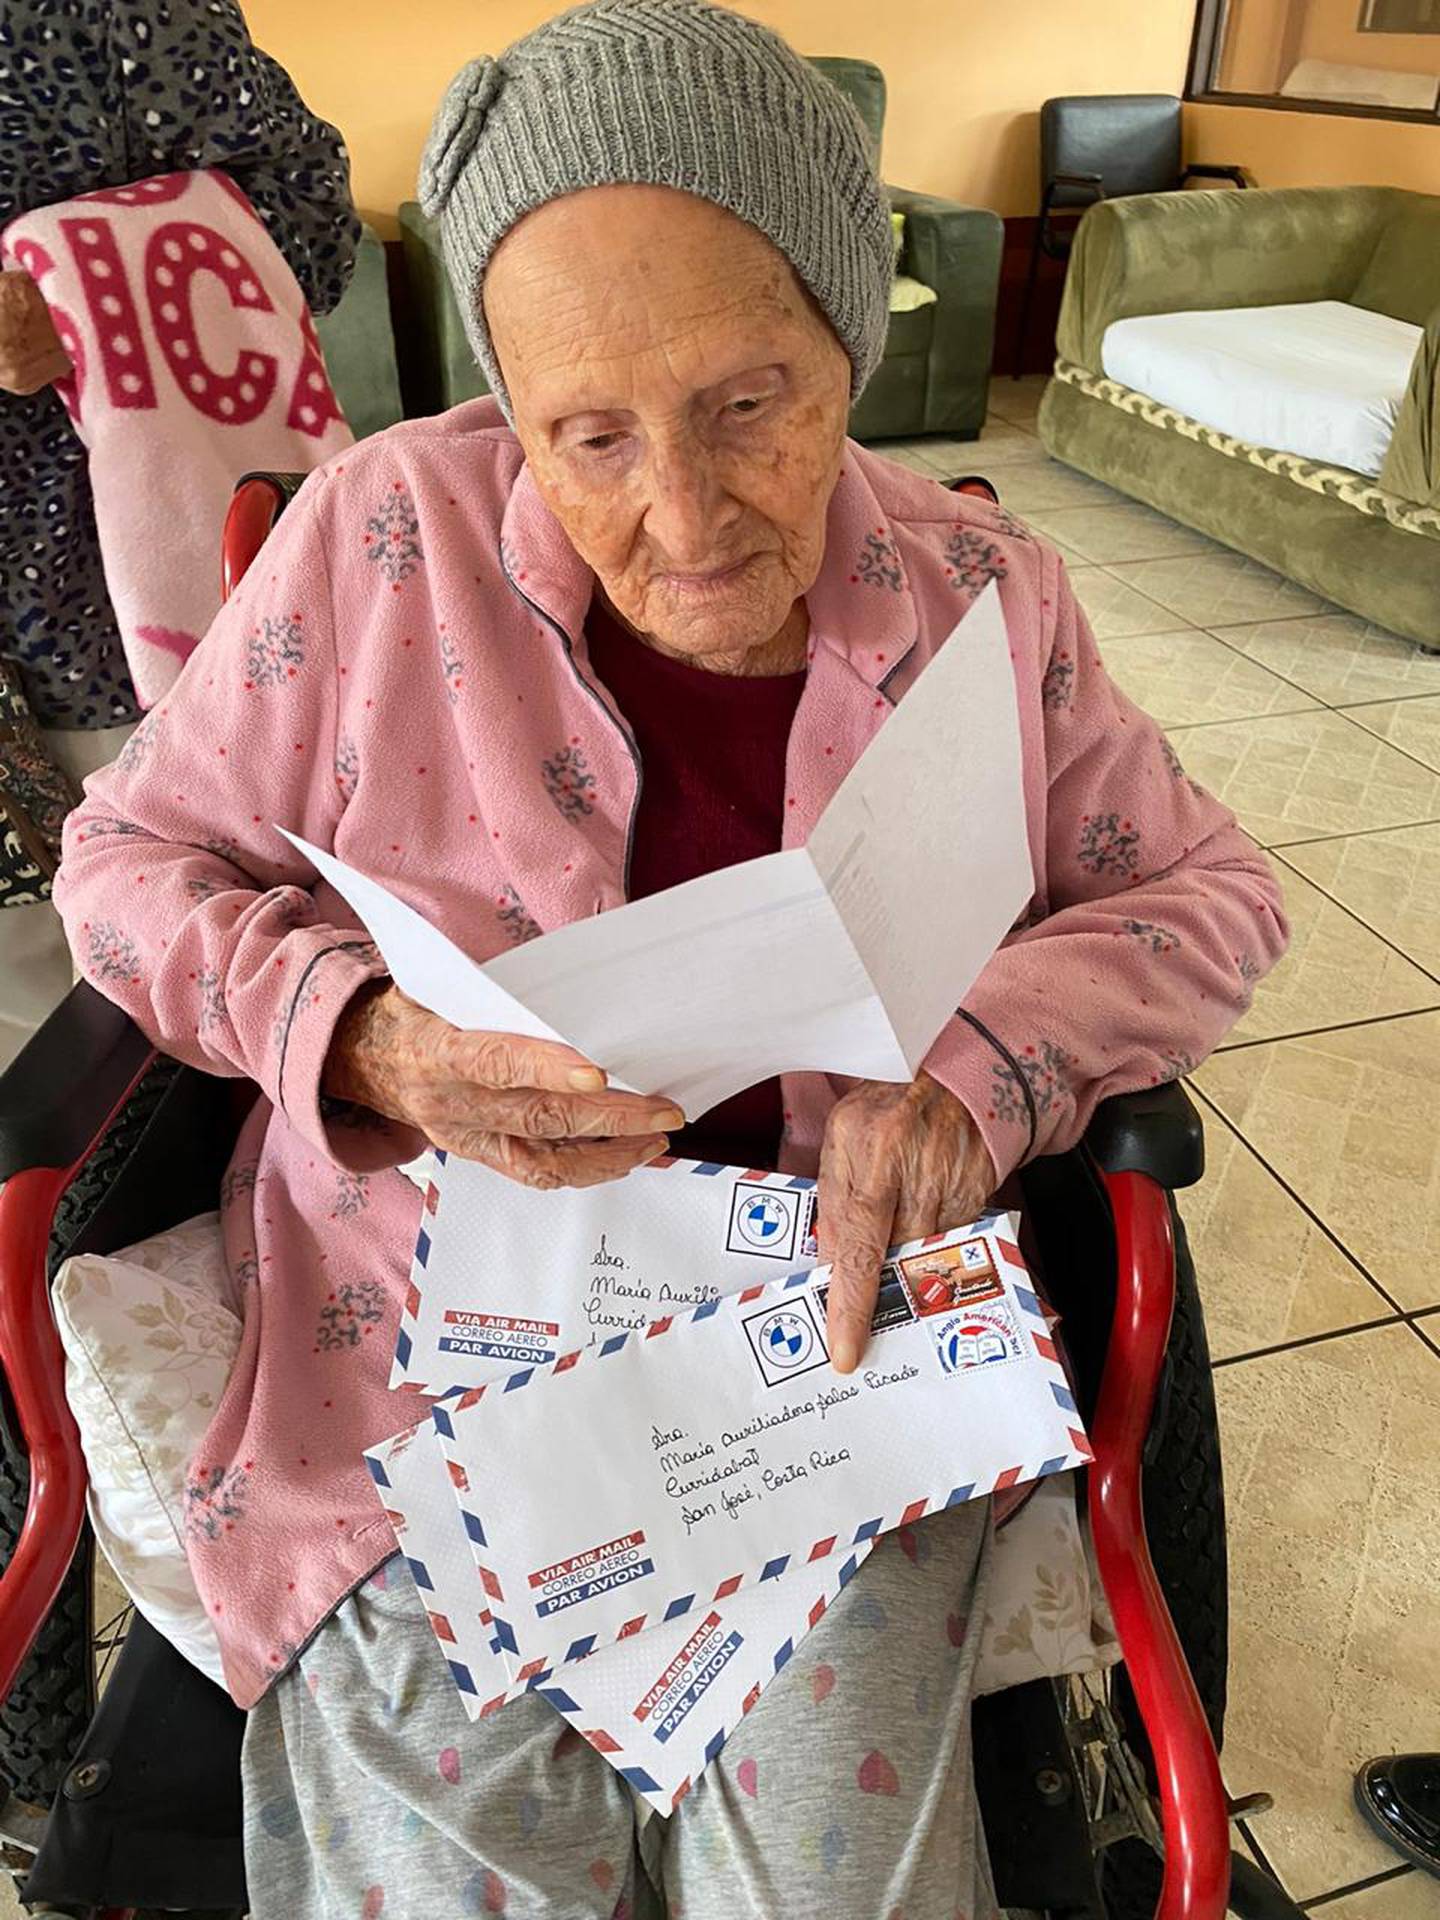 El pasado viernes 13 de noviembre fue de mucha suerte para 48 abuelitos de dos hogares para adultos mayores, de Santa Ana y Curridabat, porque recibieron cuatro cartas y regalos gracias a un cartero que llegó del cielo: un dron.